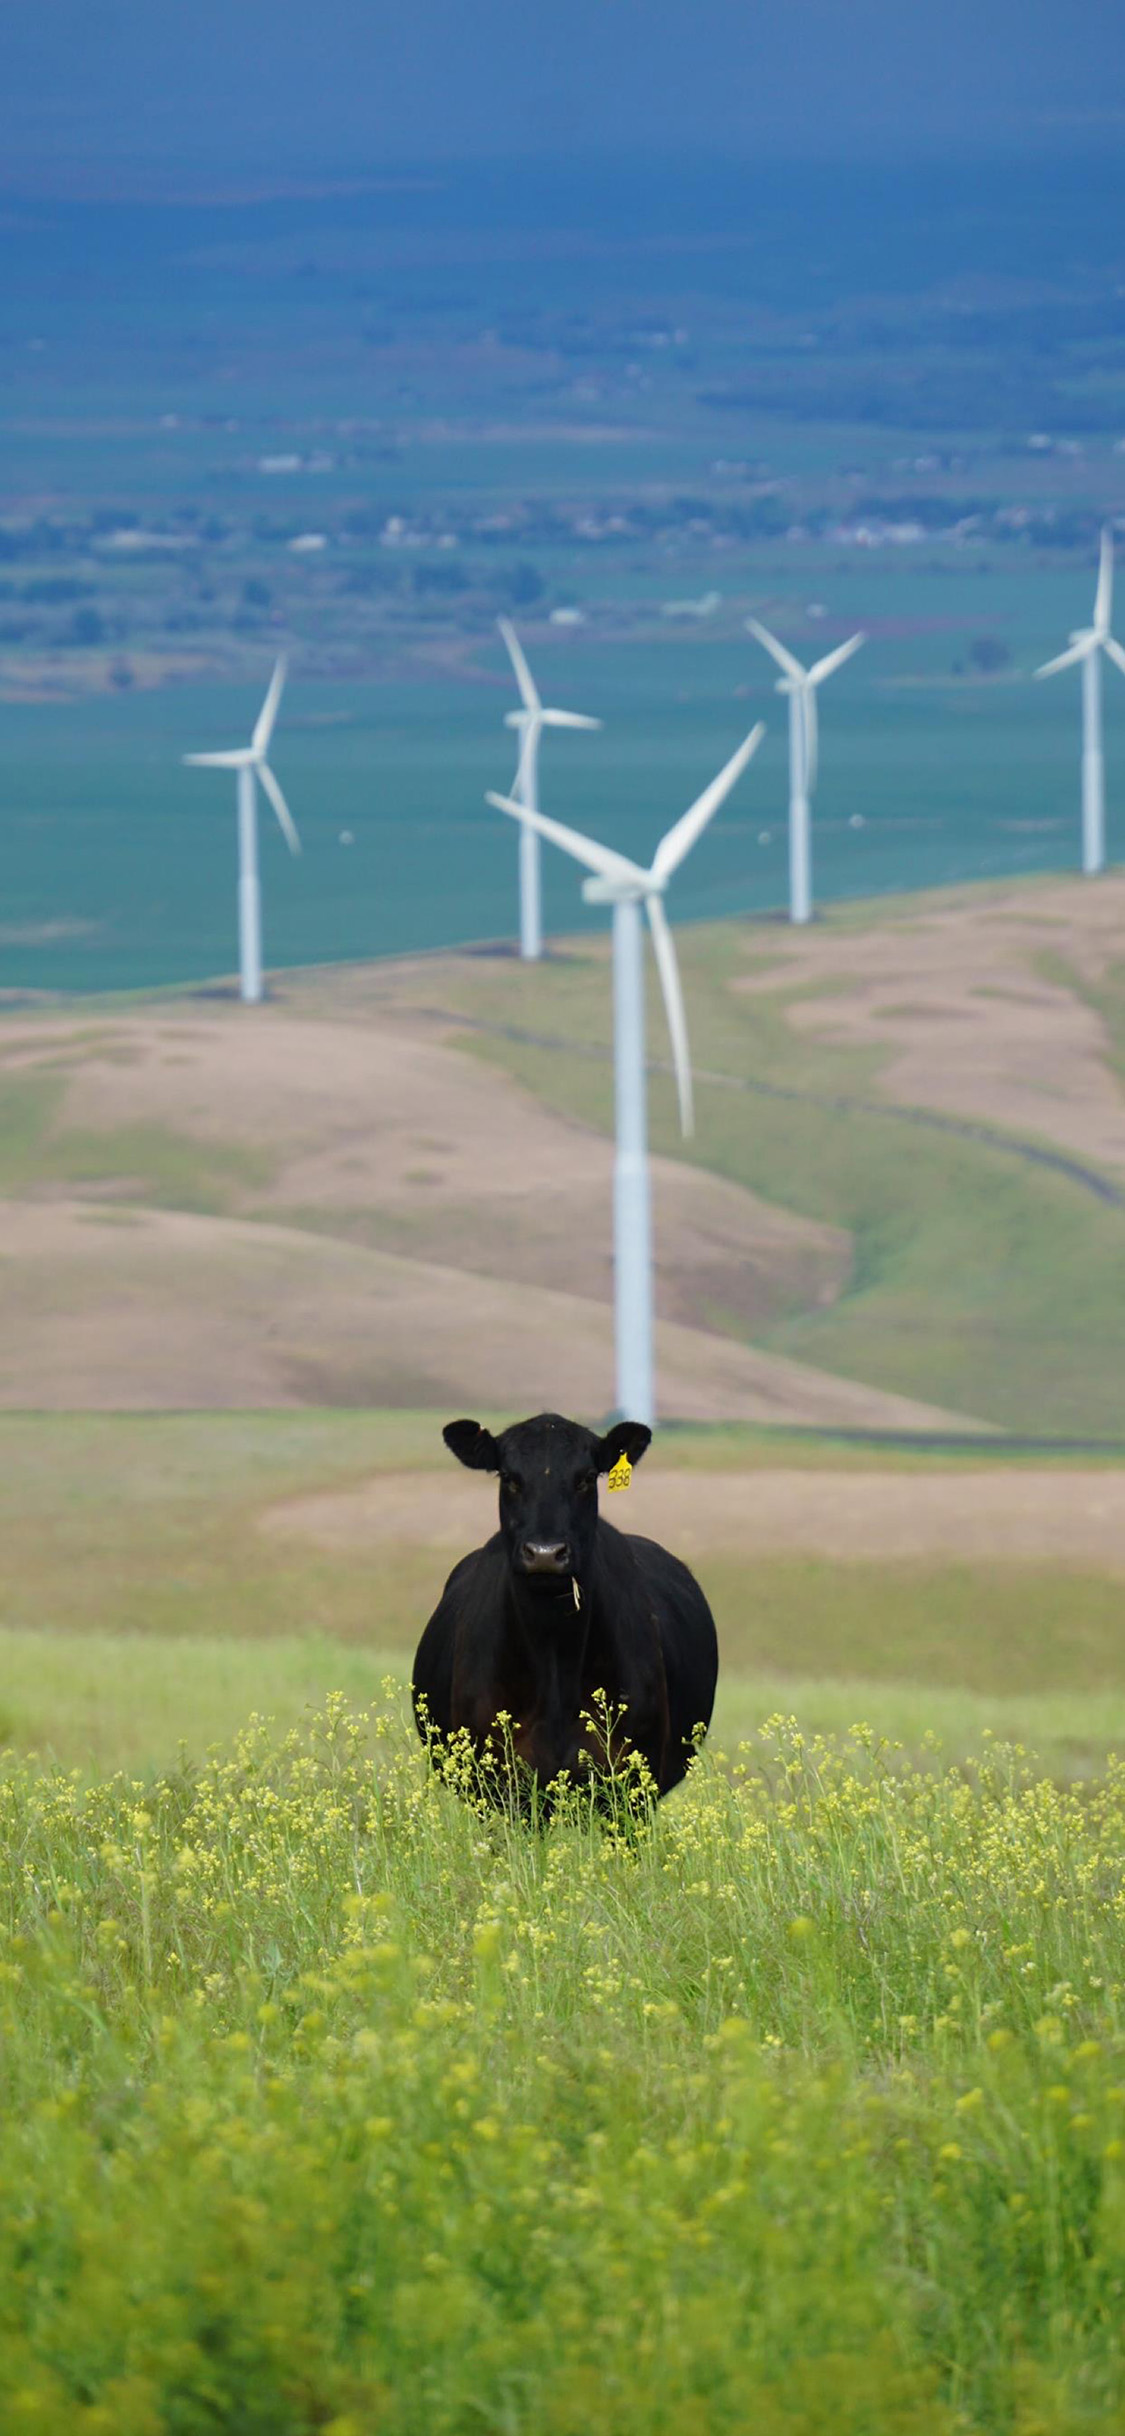 General 1125x2436 cow animals wind turbine wind farm